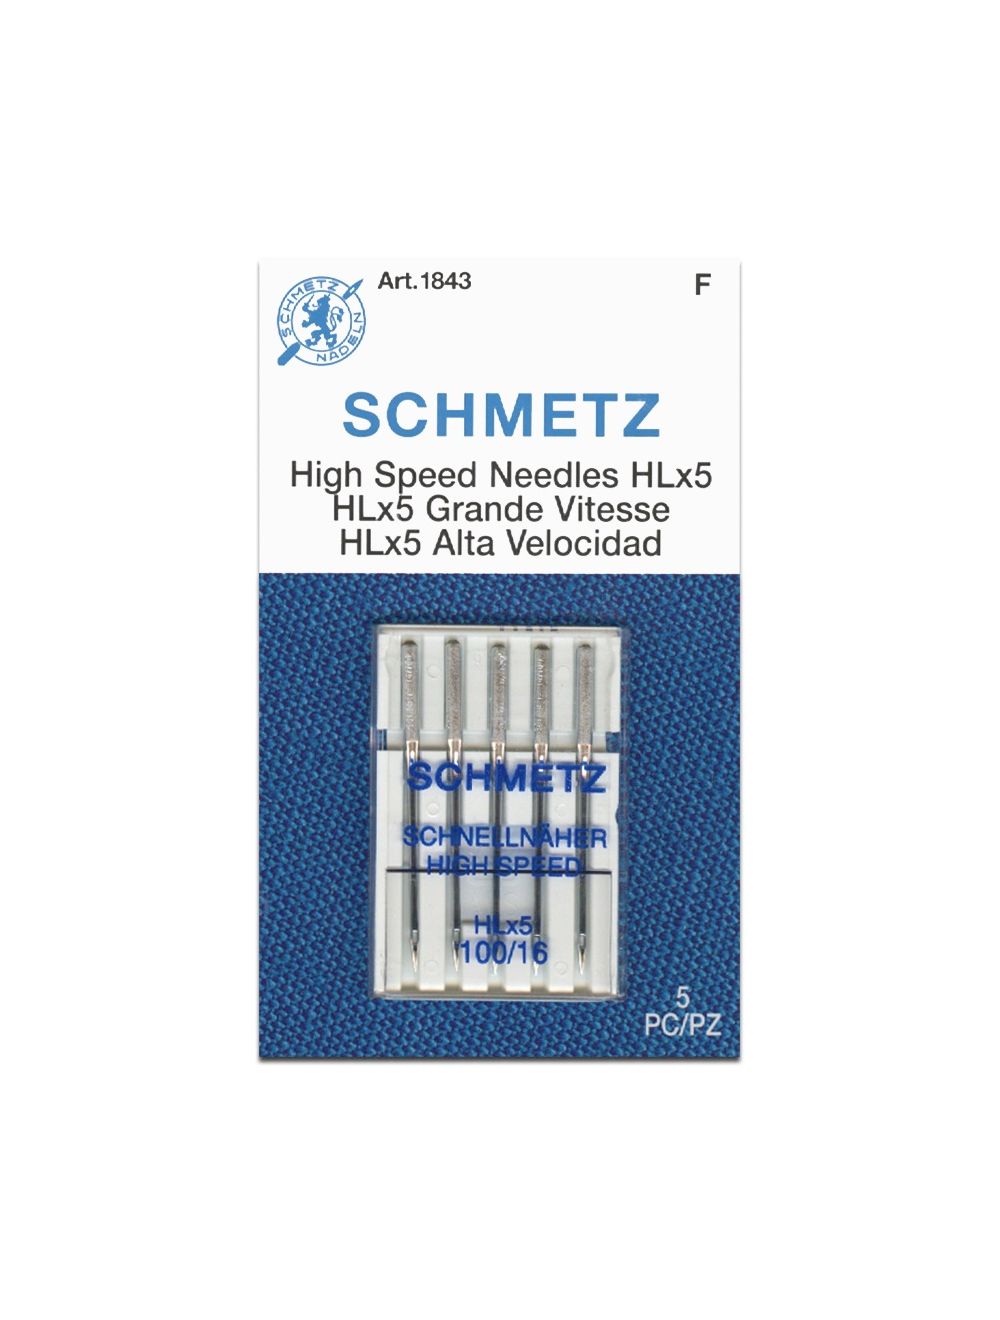 Schmetz 1843 High Speed Sewing Machine Needle Size 100/16 HLX5 